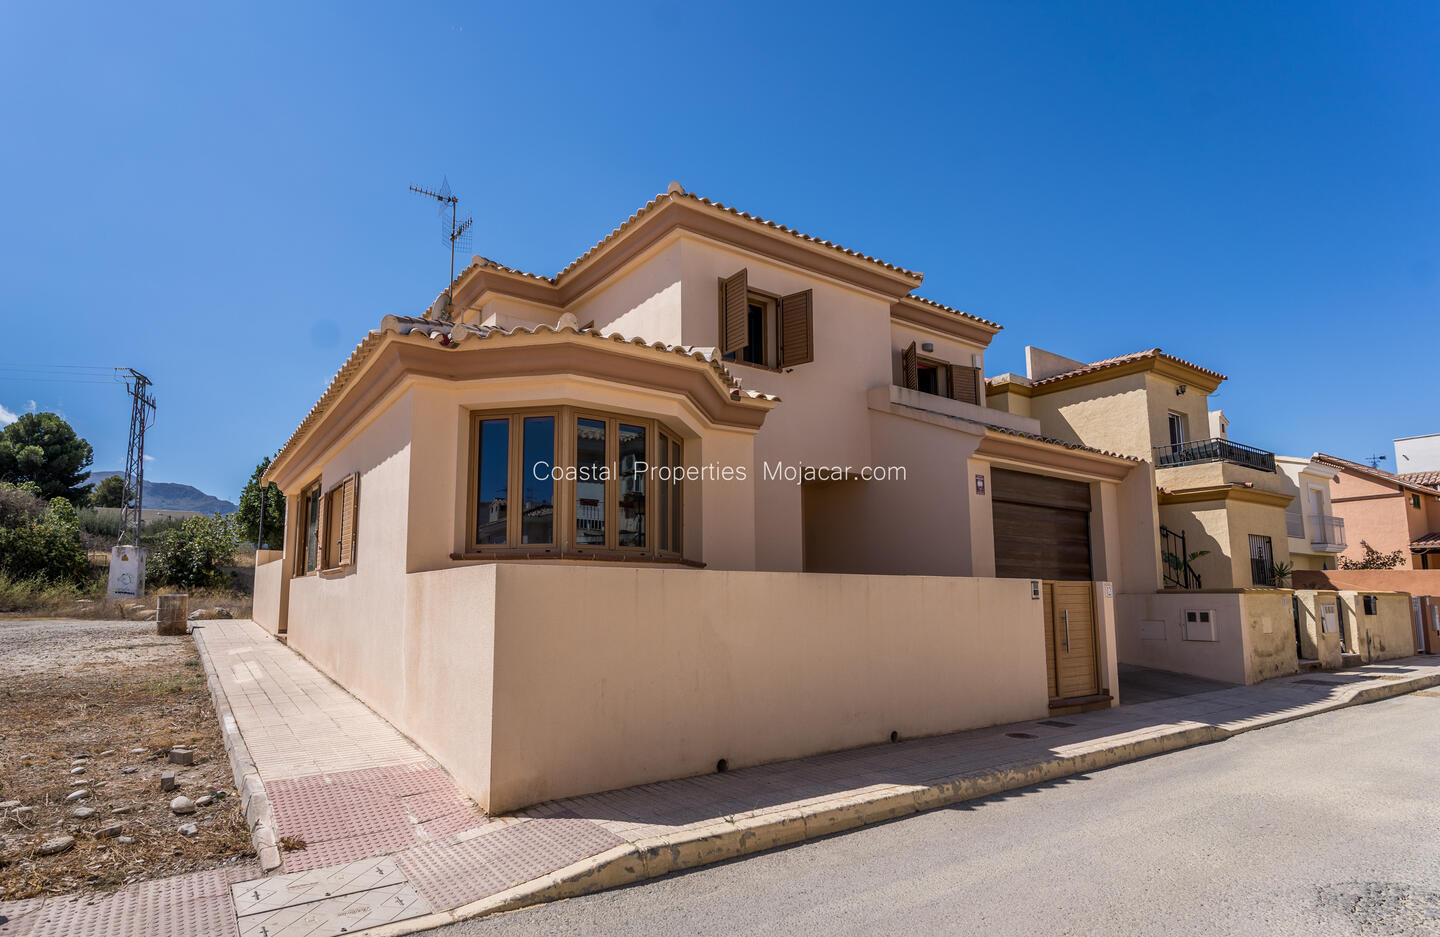 CPM 002 - VILLA MAR: Townhouse for Sale in Turre, Almería